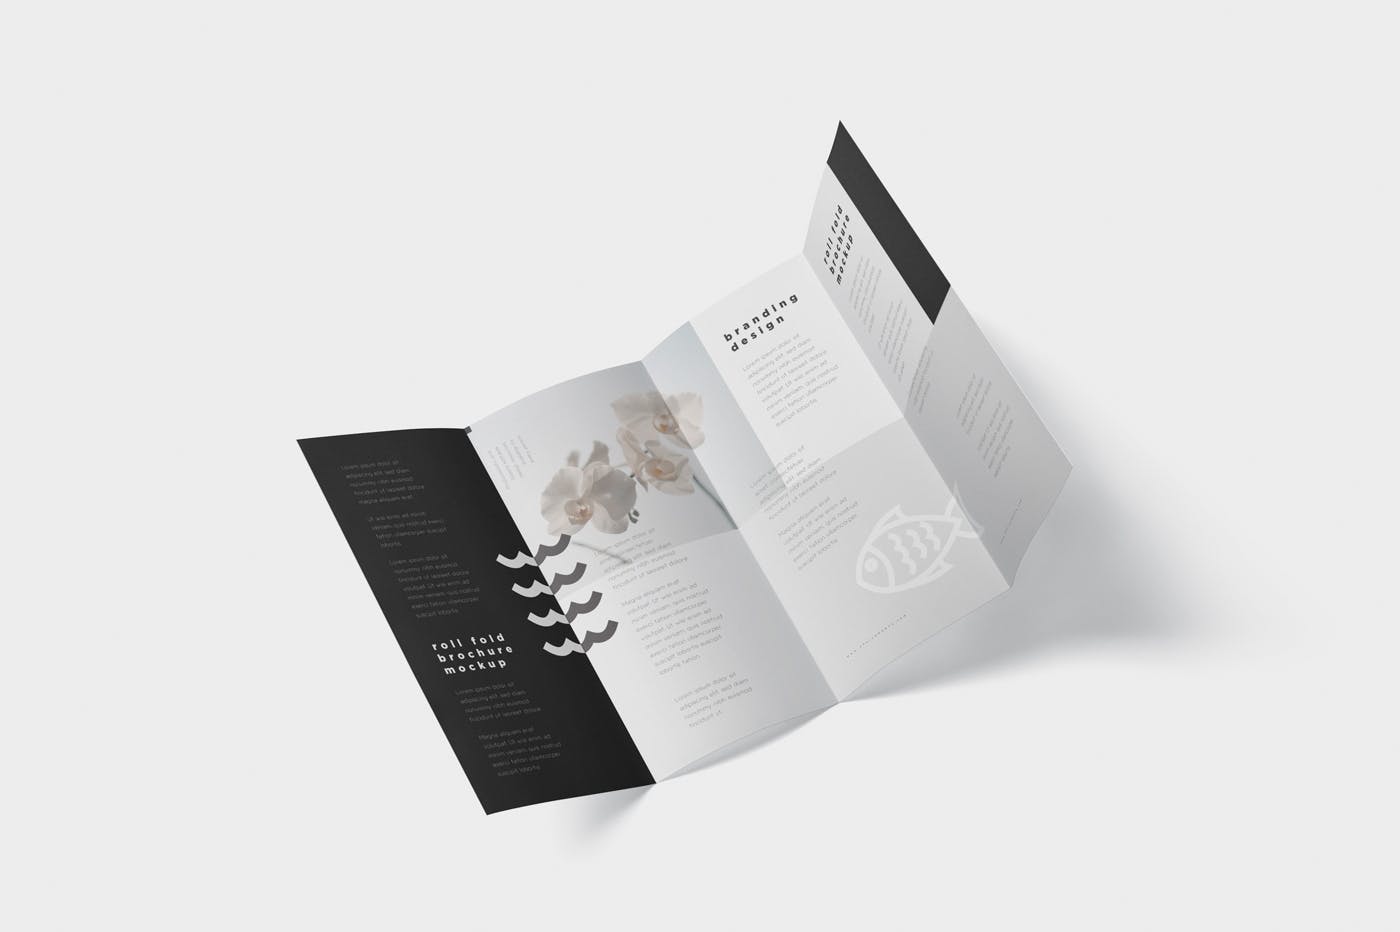 折叠设计风格企业传单/宣传册设计样机16图库精选 Roll-Fold Brochure Mockup – DL DIN Lang Size插图(5)